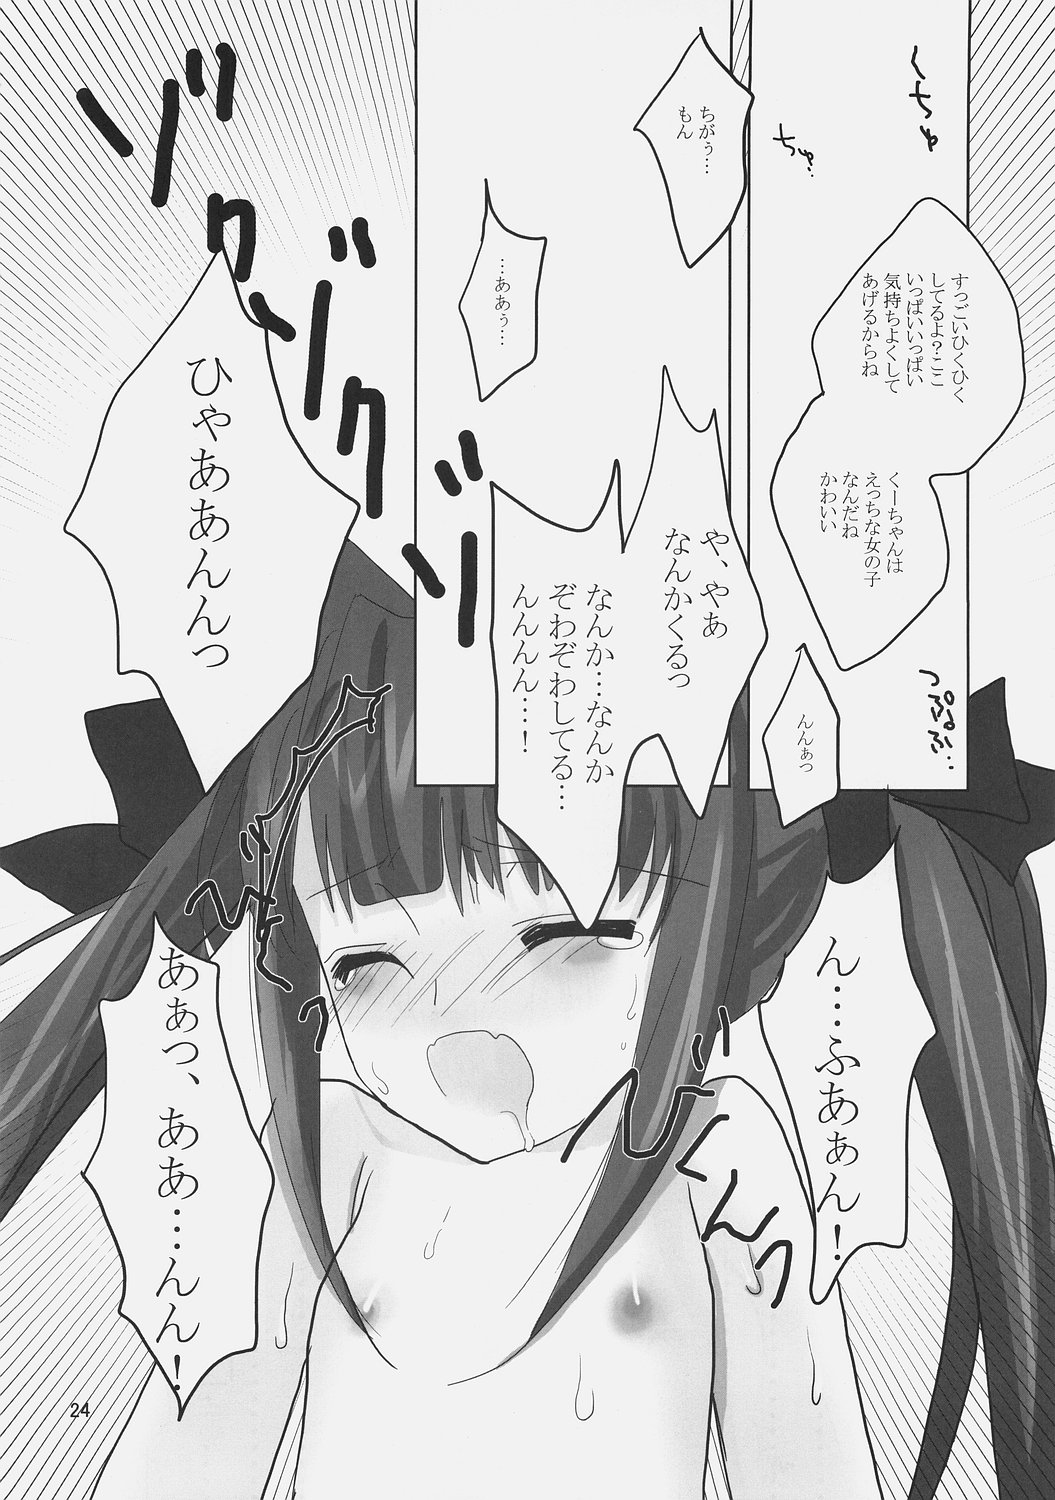 (ComiComi9) [Umi No Sachi Teishoku, Chimaroni?, Fake fur, (Kakifly, Chimaro, Furu)] PanPanPangya (Sukatto Golf Pangya) page 23 full